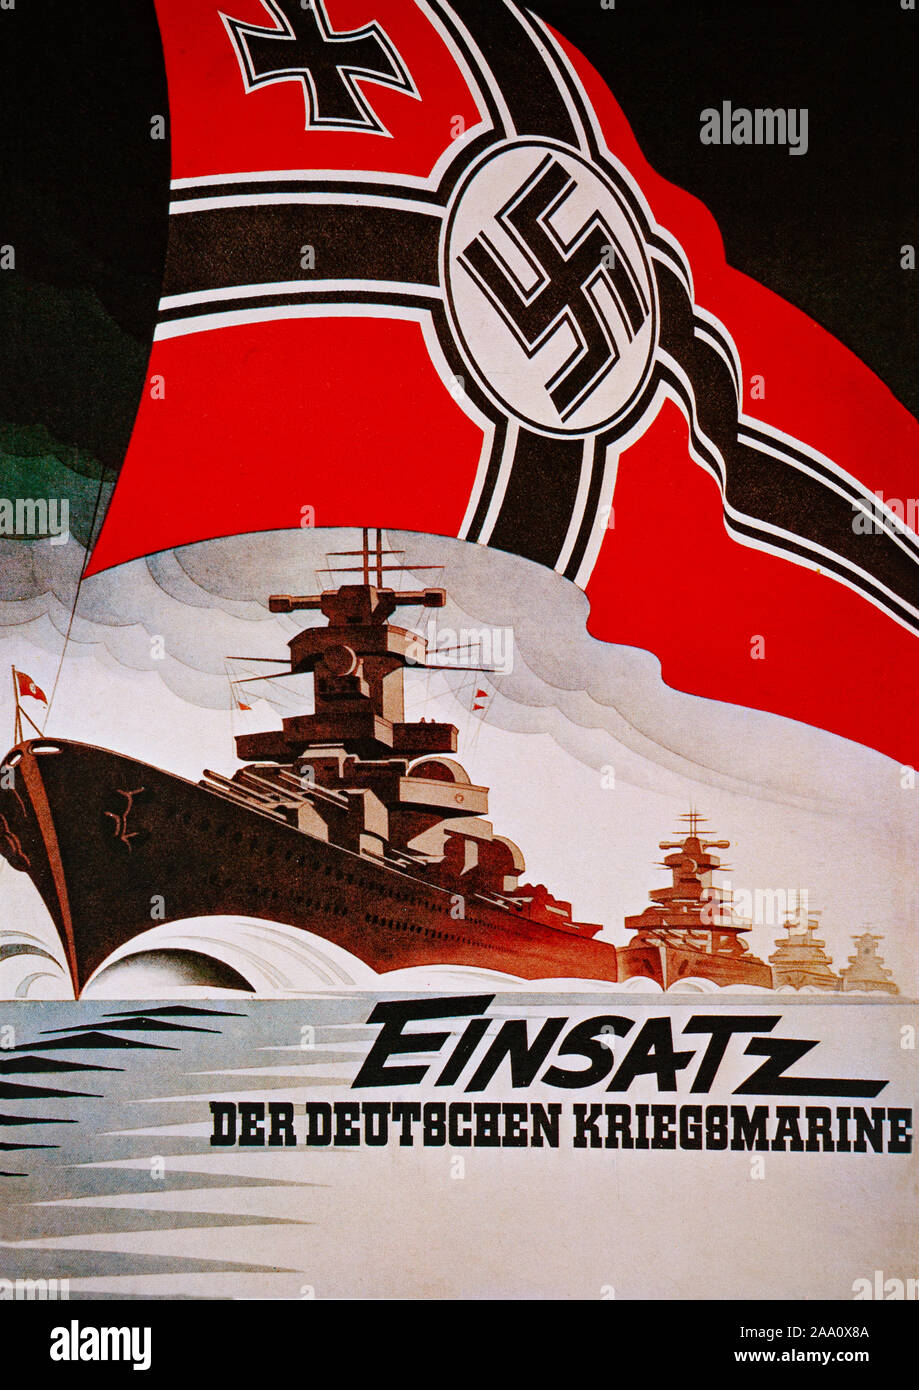 Une seconde guerre mondiale affiche de recrutement pour la Kriegsmarine, la marine de l'Allemagne nazie de 1935 à 1945. Il a remplacé la Kaiserliche Marine de l'Empire allemand (1871-1918) et l'entre-deux guerres Reichsmarine (1919-1935) de la République de Weimar. Banque D'Images